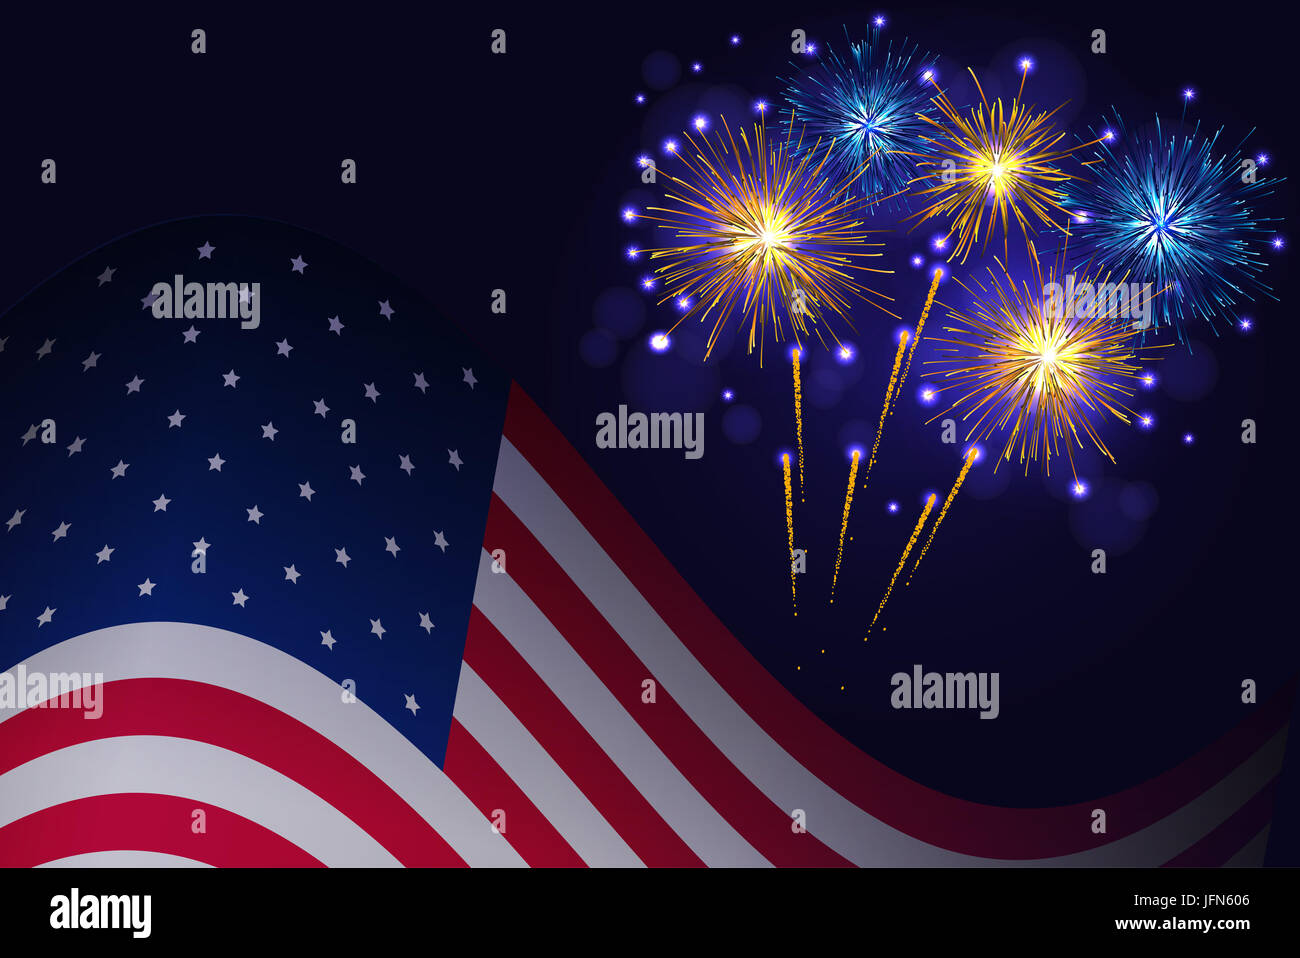 United States flag and celebration golden blue fireworks background ...